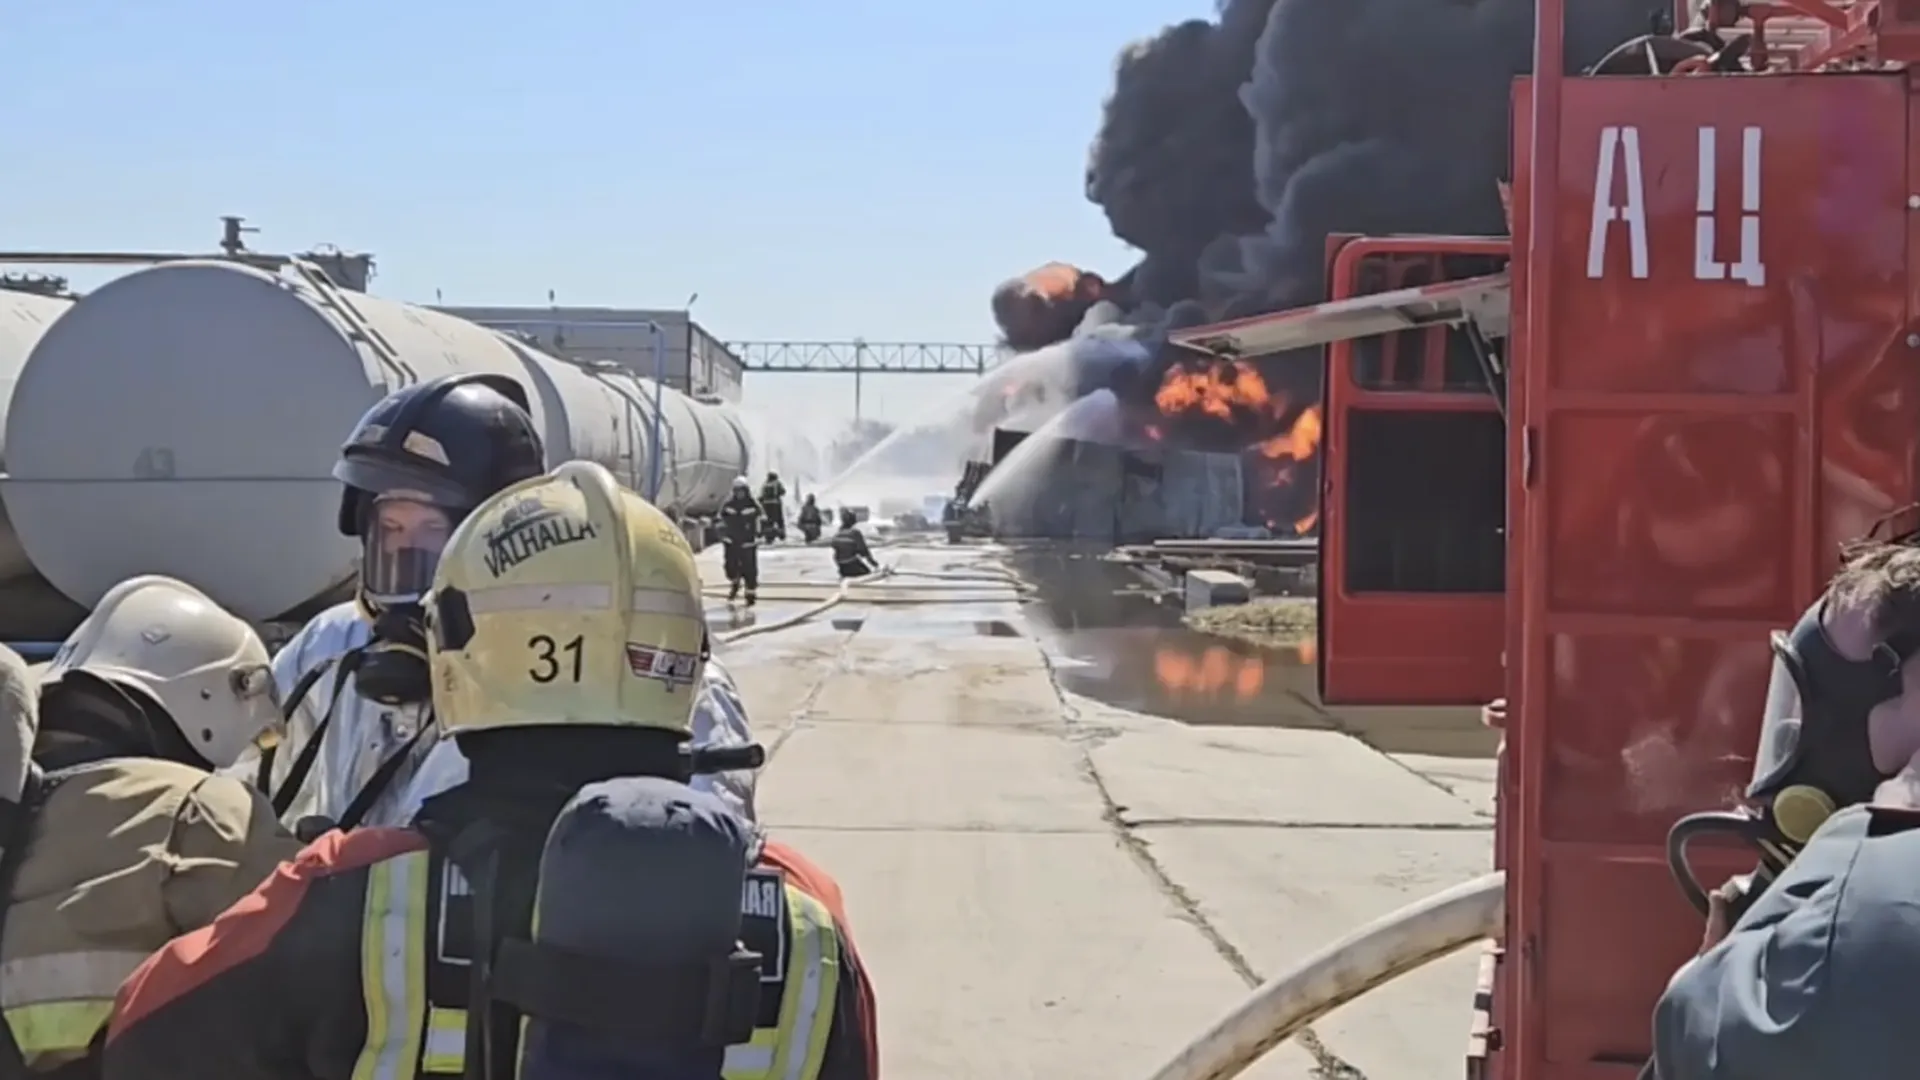 Емкости с нефтепродуктами загорелись на одном из производств в Омске